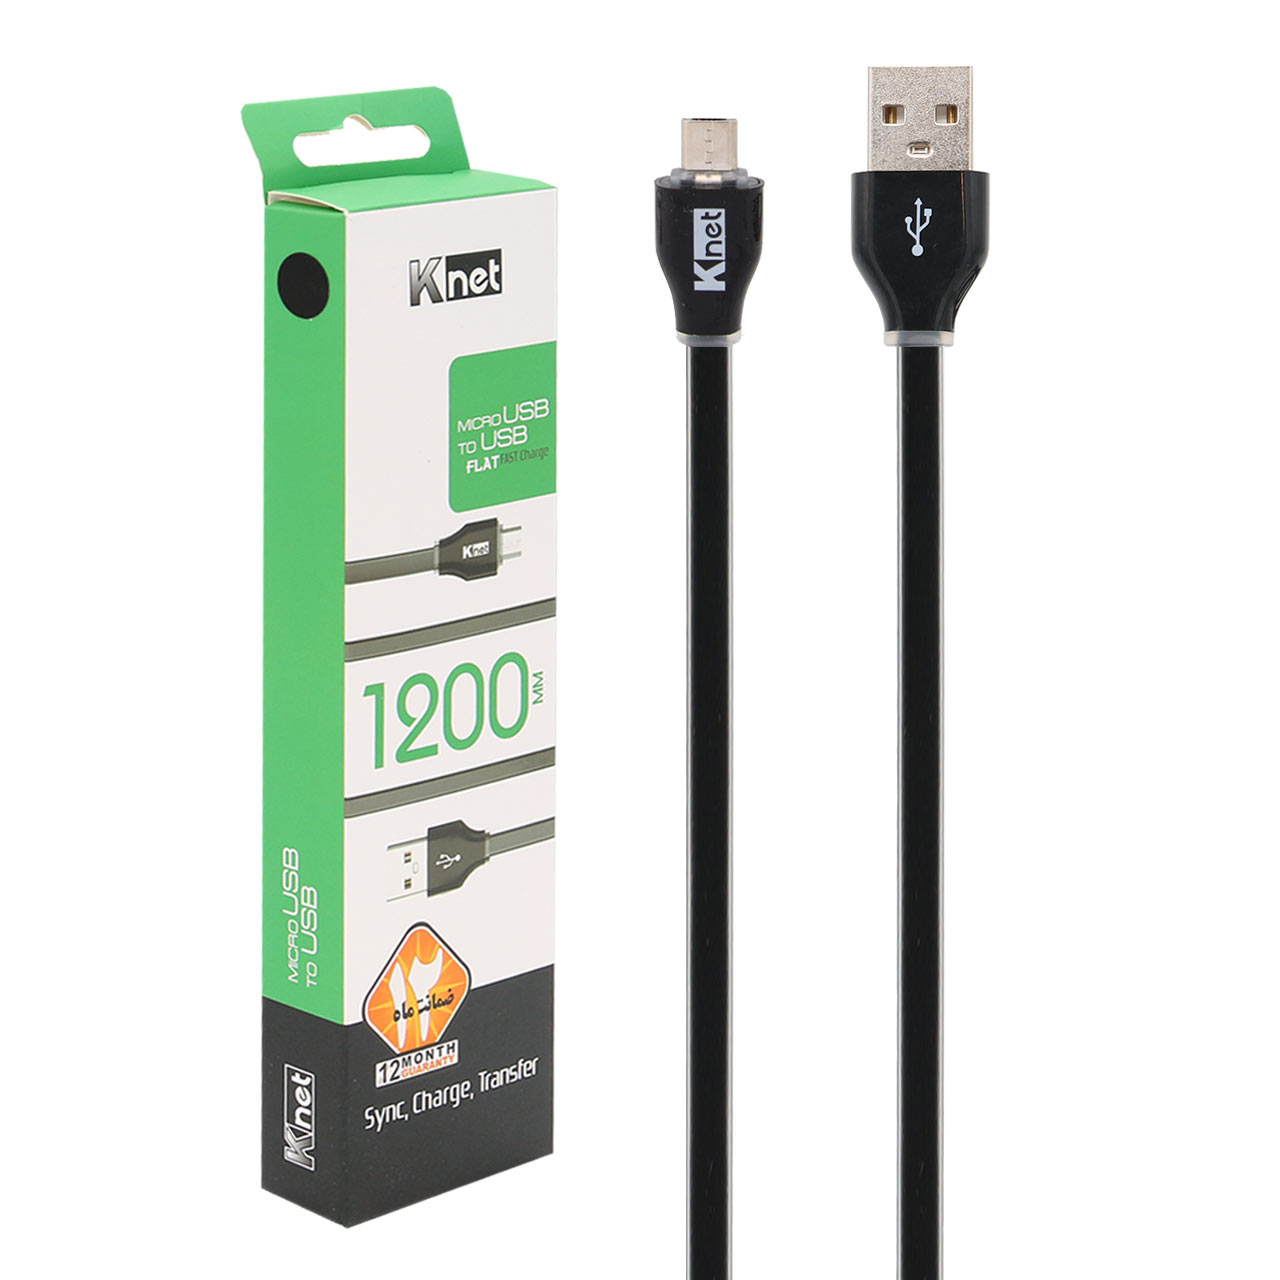 کابل تبدیل USB به میکرو فلت کی نت مدل K-UC555 به طول 1.2 متر - فروشگاهاینترنتی یاس پی سی